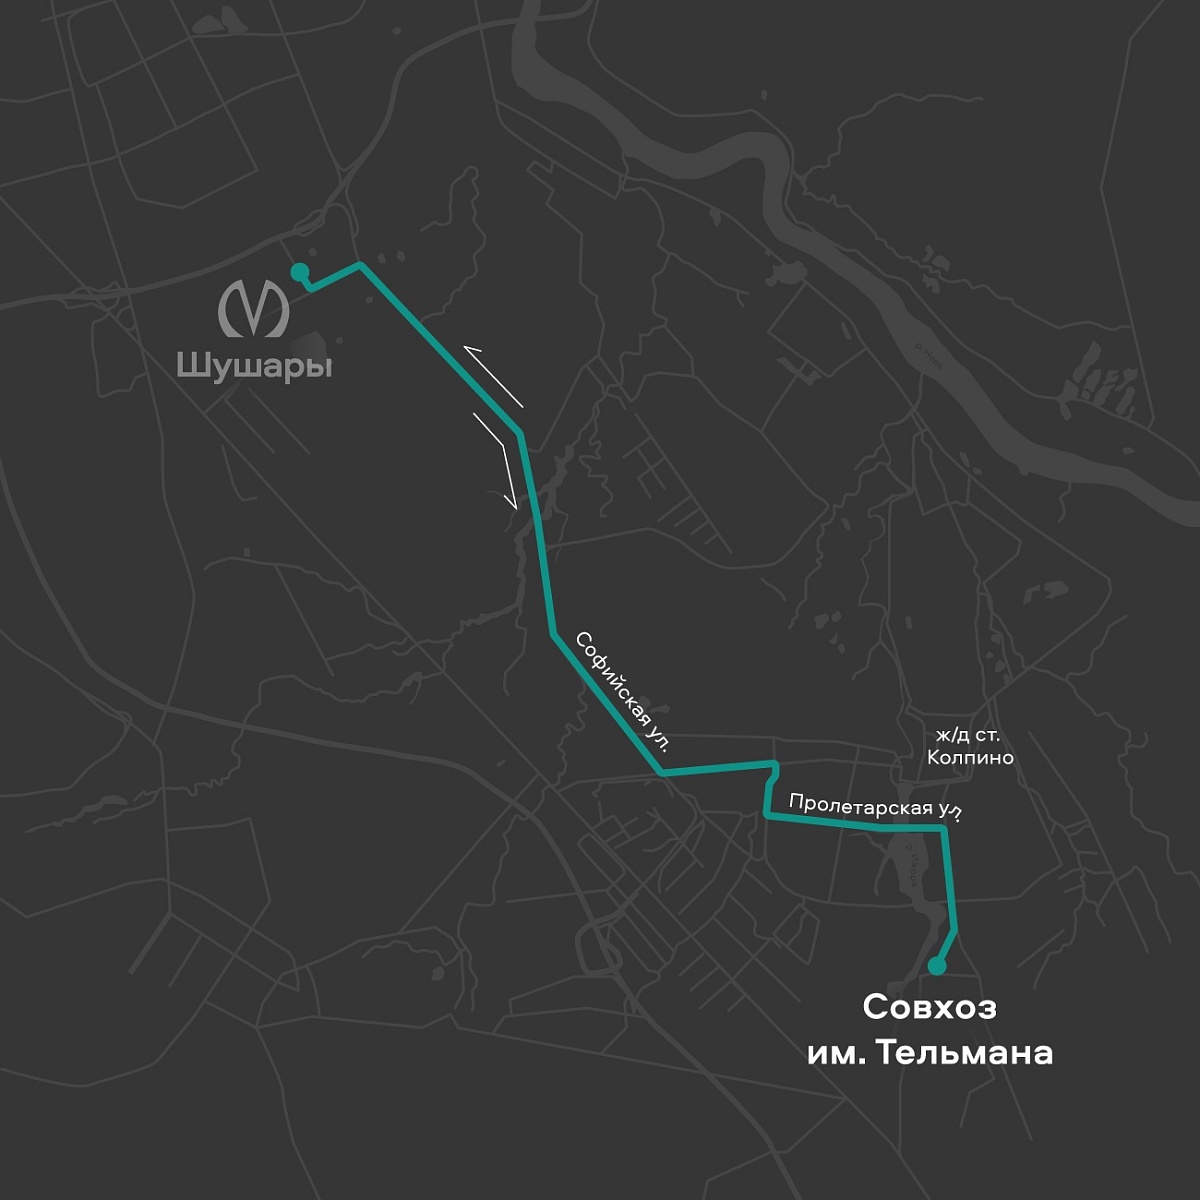 Новый автобусный маршрут № 324 появится в&nbsp;Колпинском районе уже в&nbsp;апреле этого года